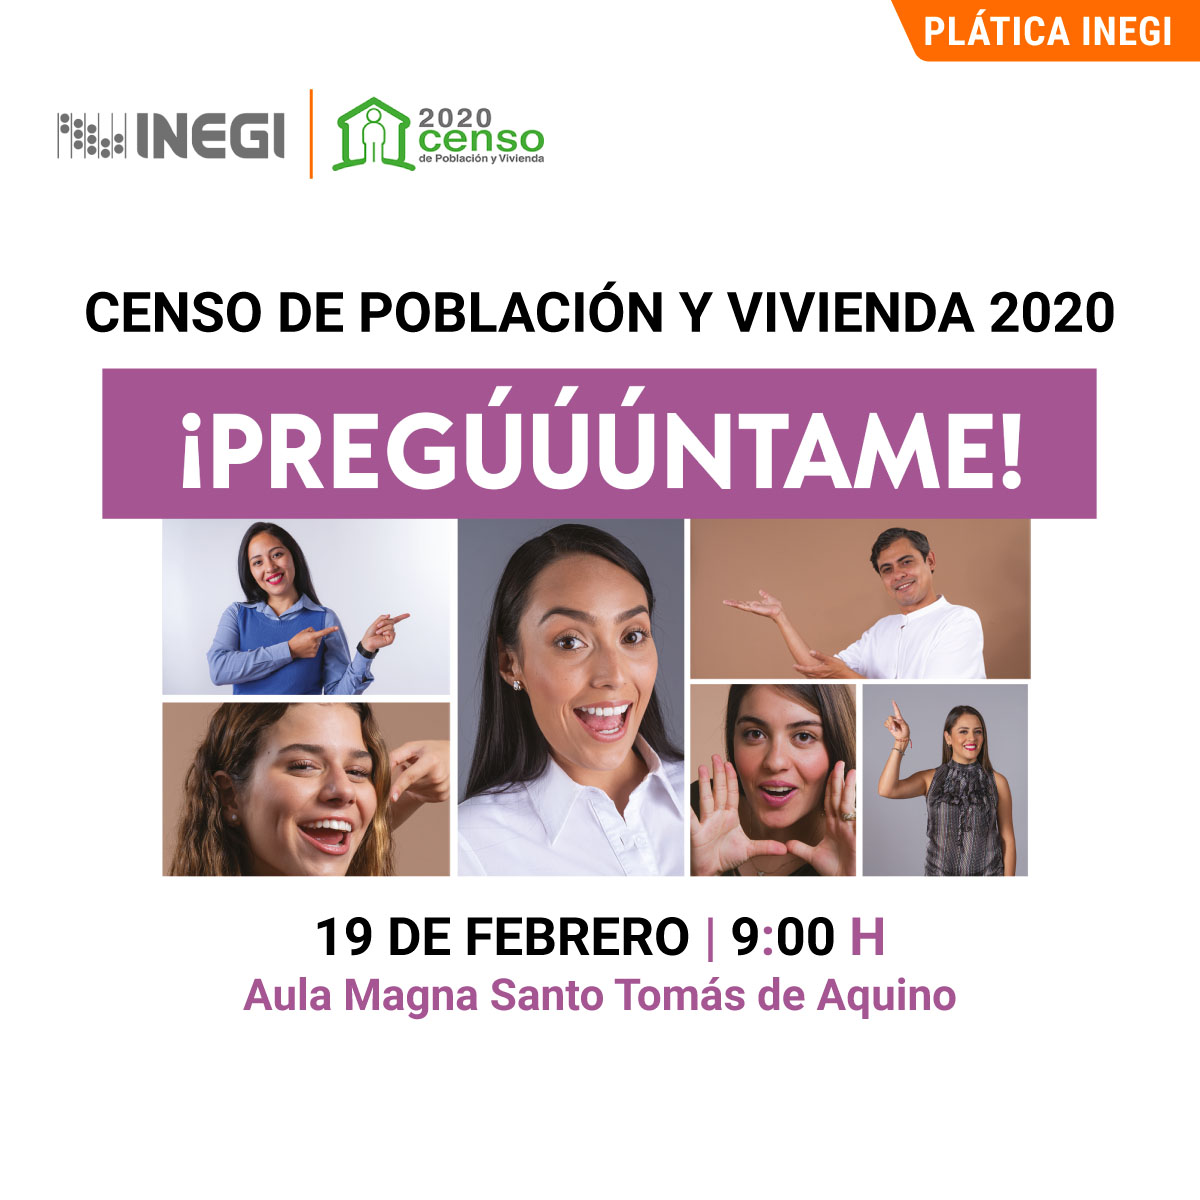 Plática INEGI: Censo de Población y Vivienda 2020